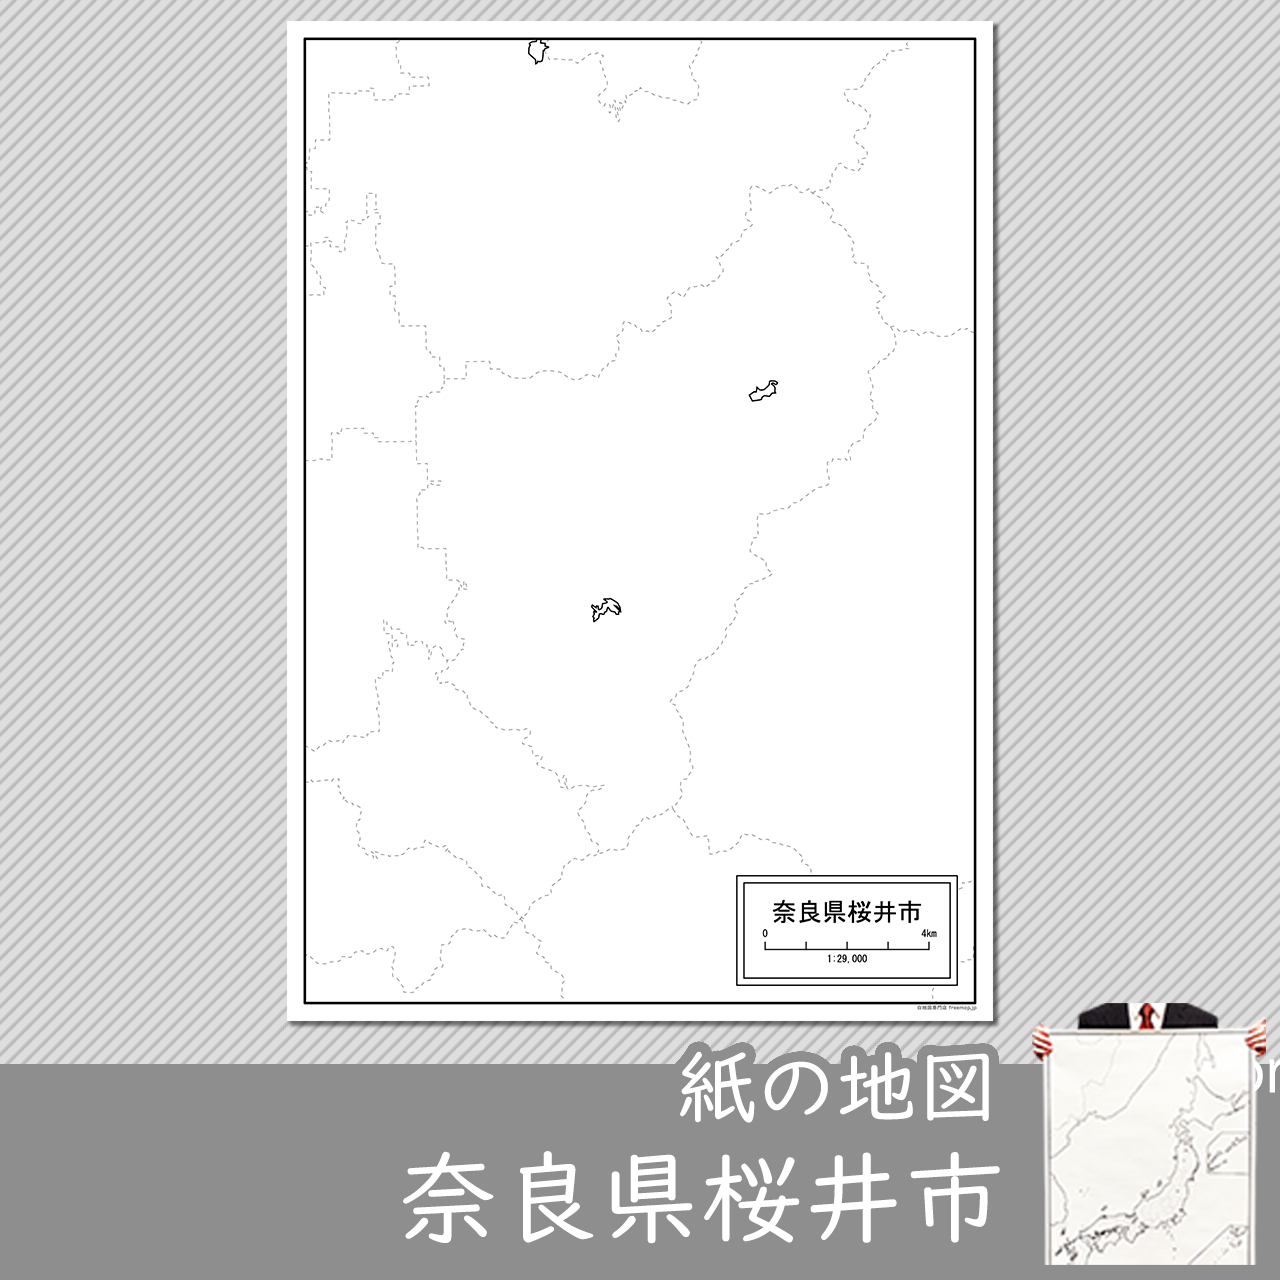 桜井市の紙の白地図のサムネイル